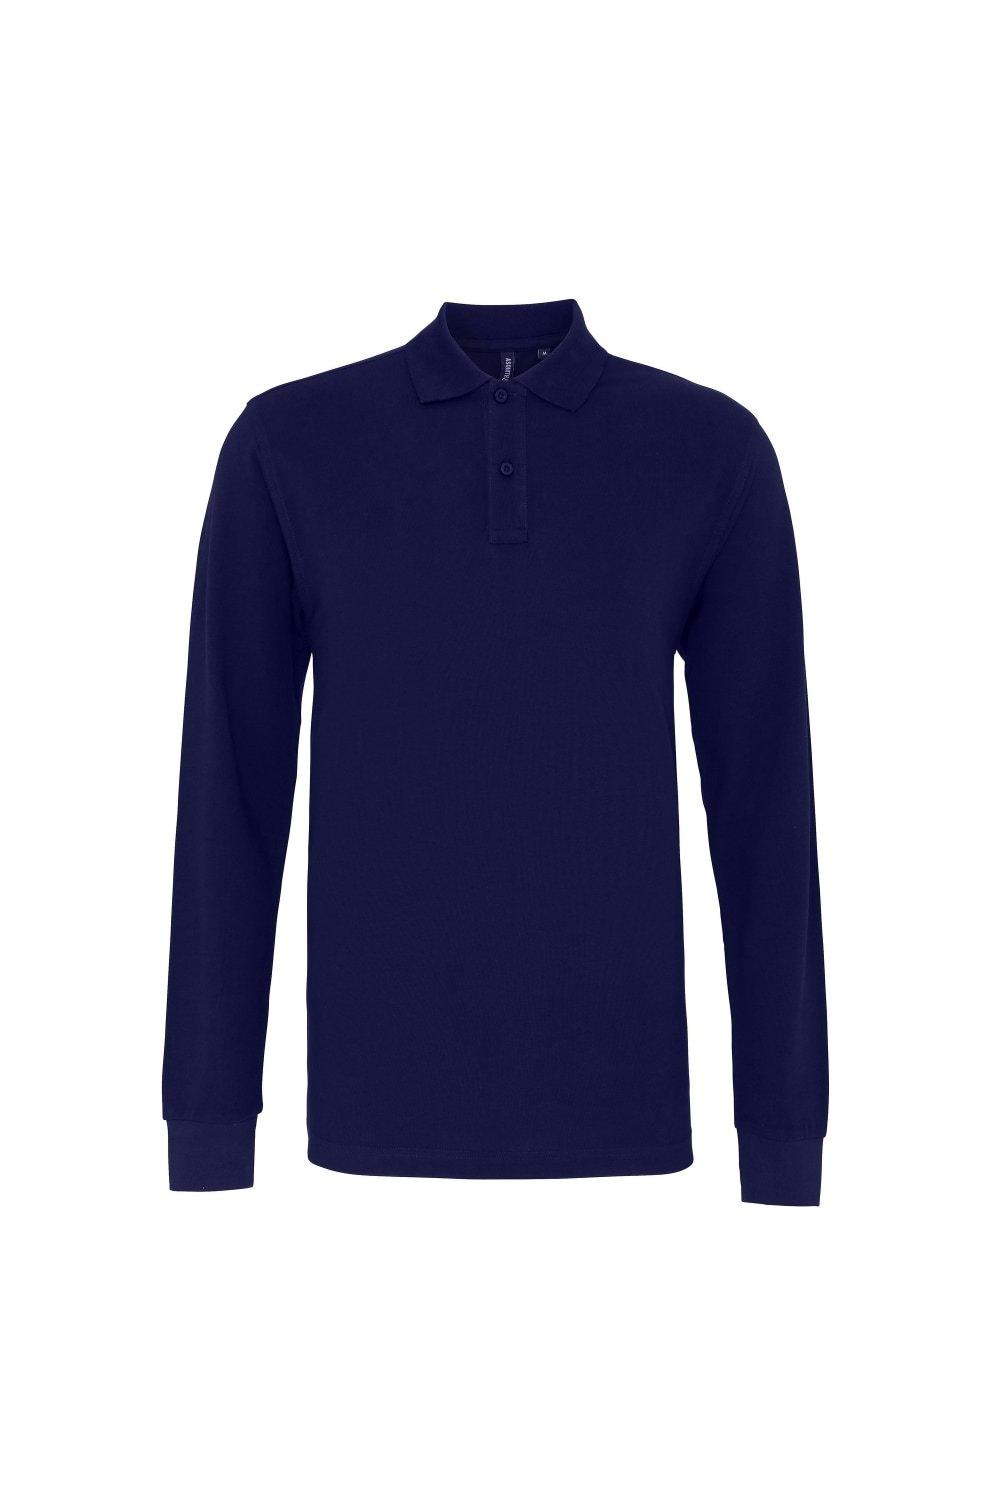 Рубашка поло классического кроя с длинными рукавами Asquith & Fox, темно-синий рубашка поло с длинными рукавами lyle